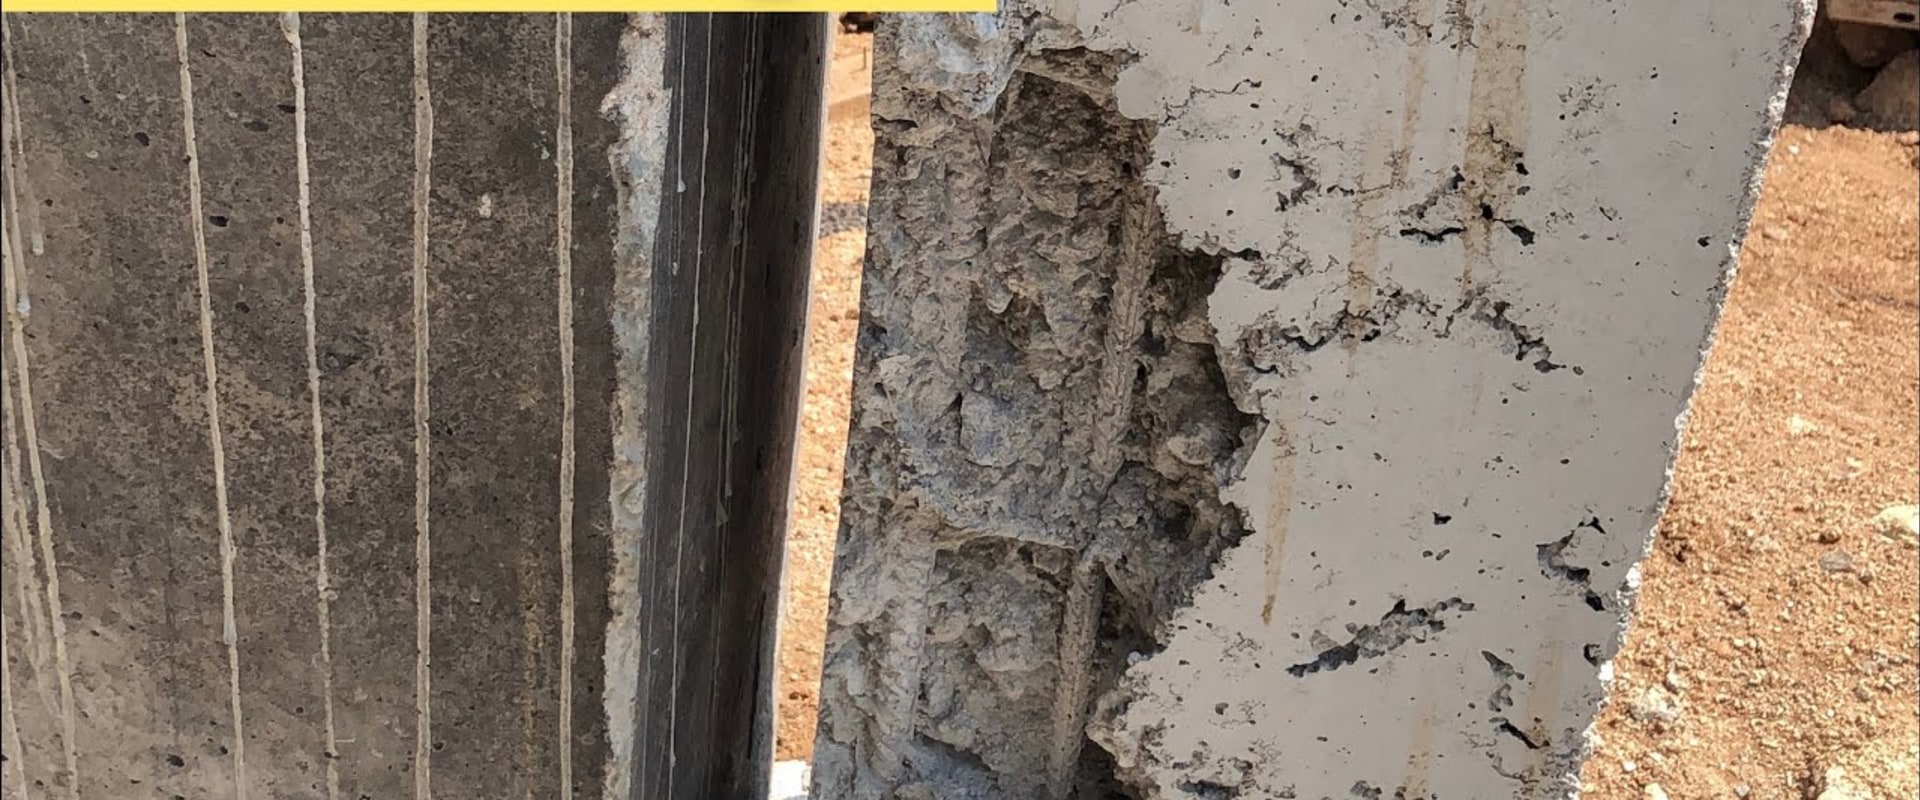 What is fosroc concrete repair?